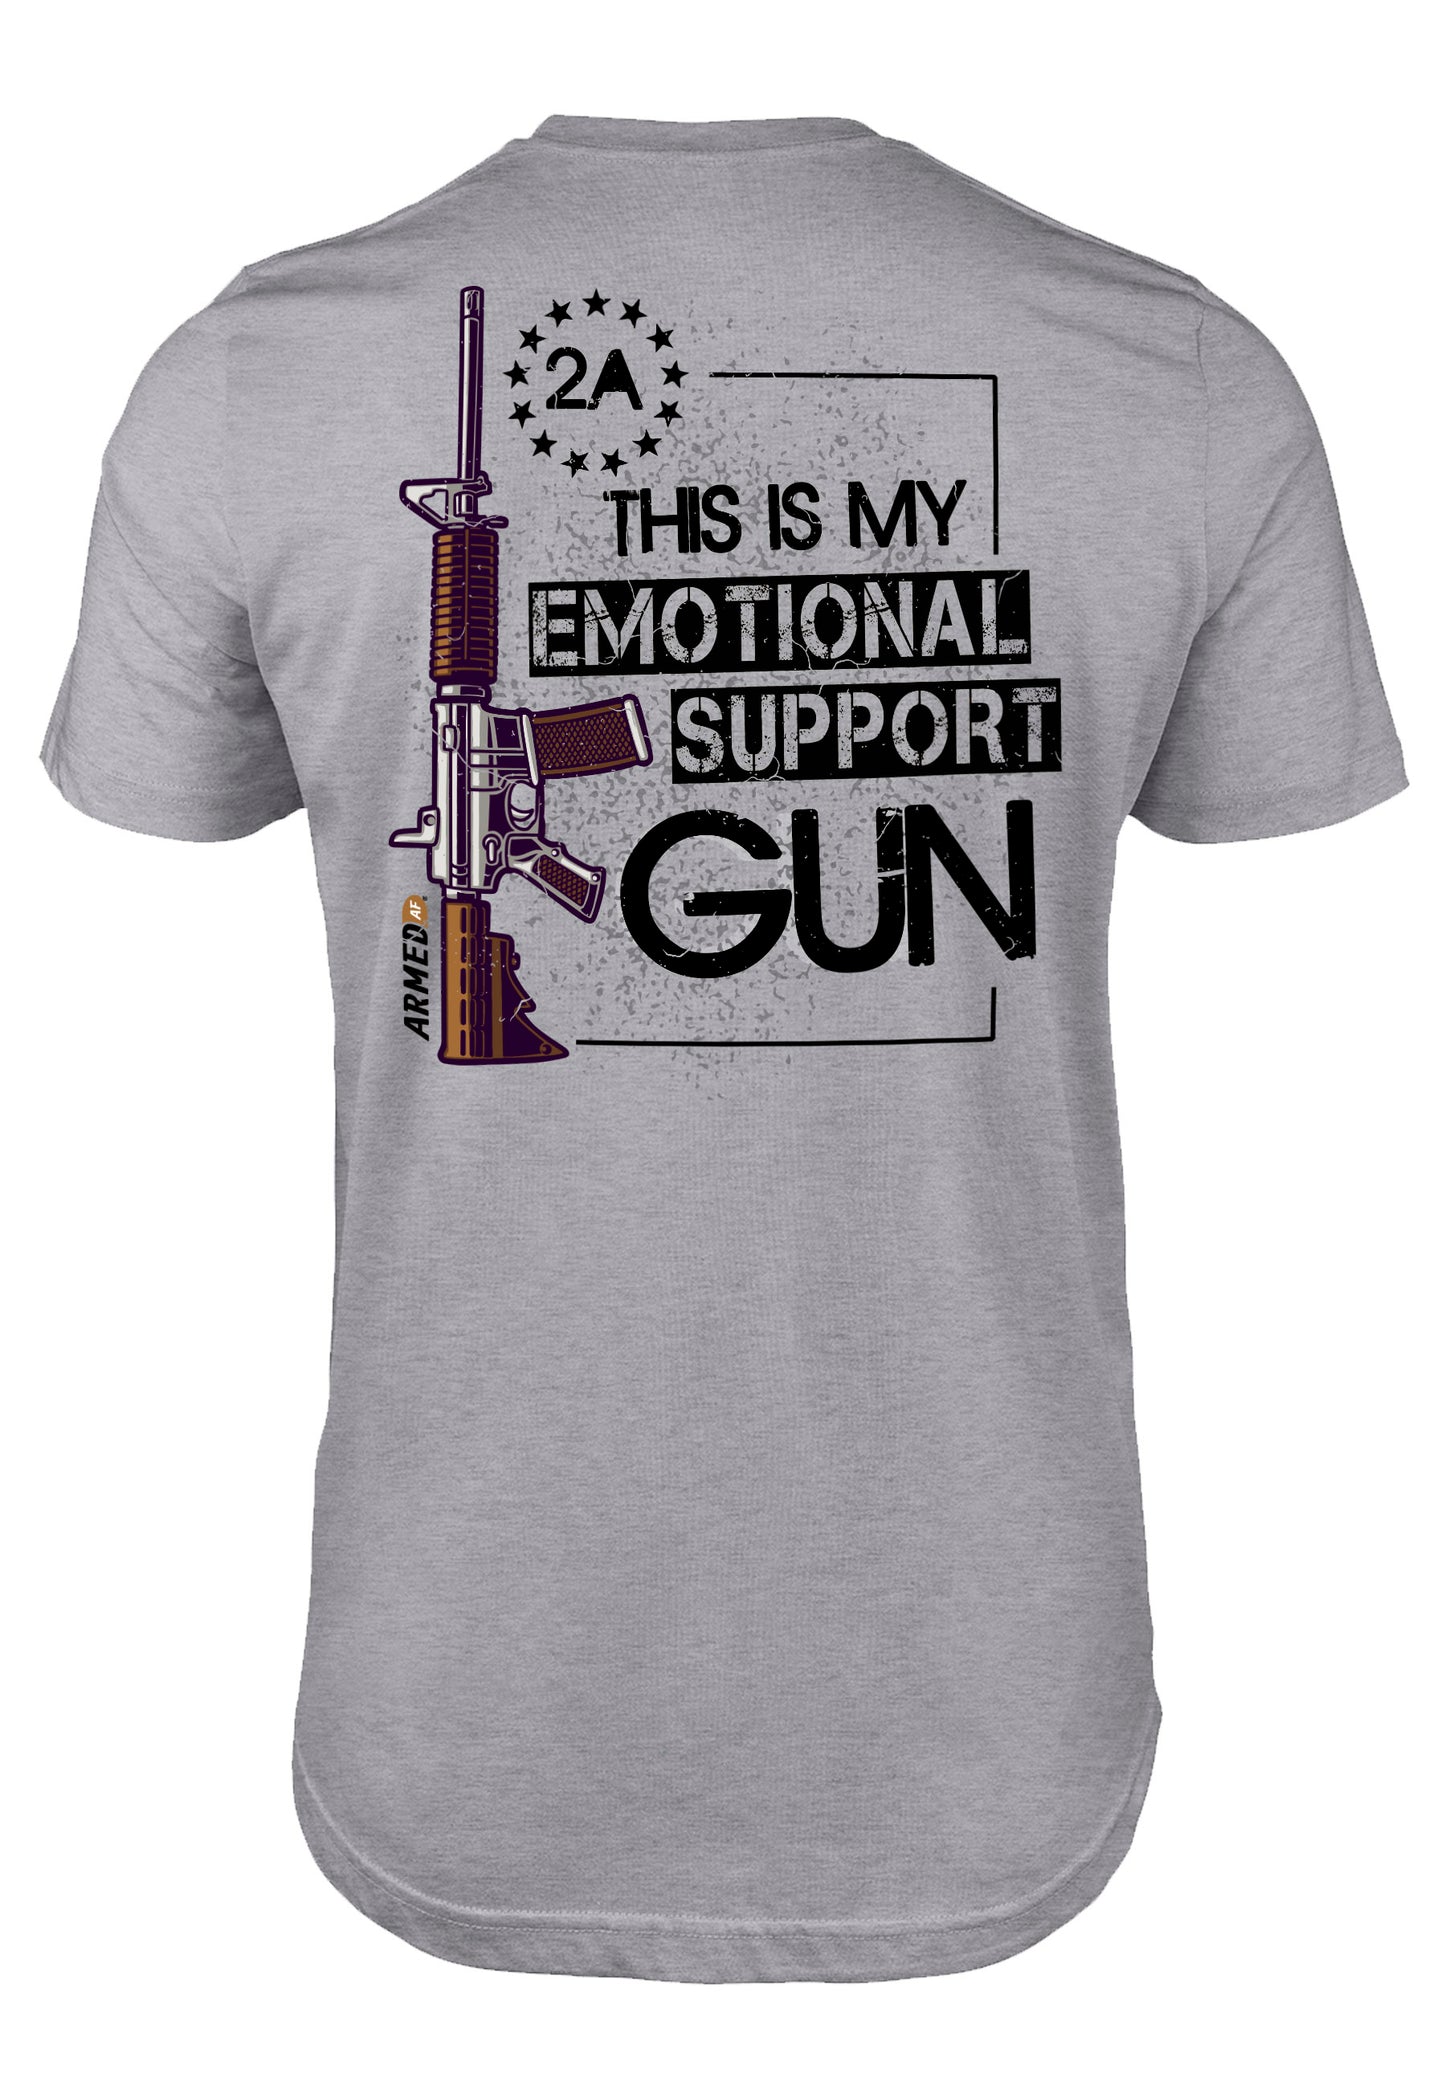 Teeslanger Emotional Support gun tee shirt